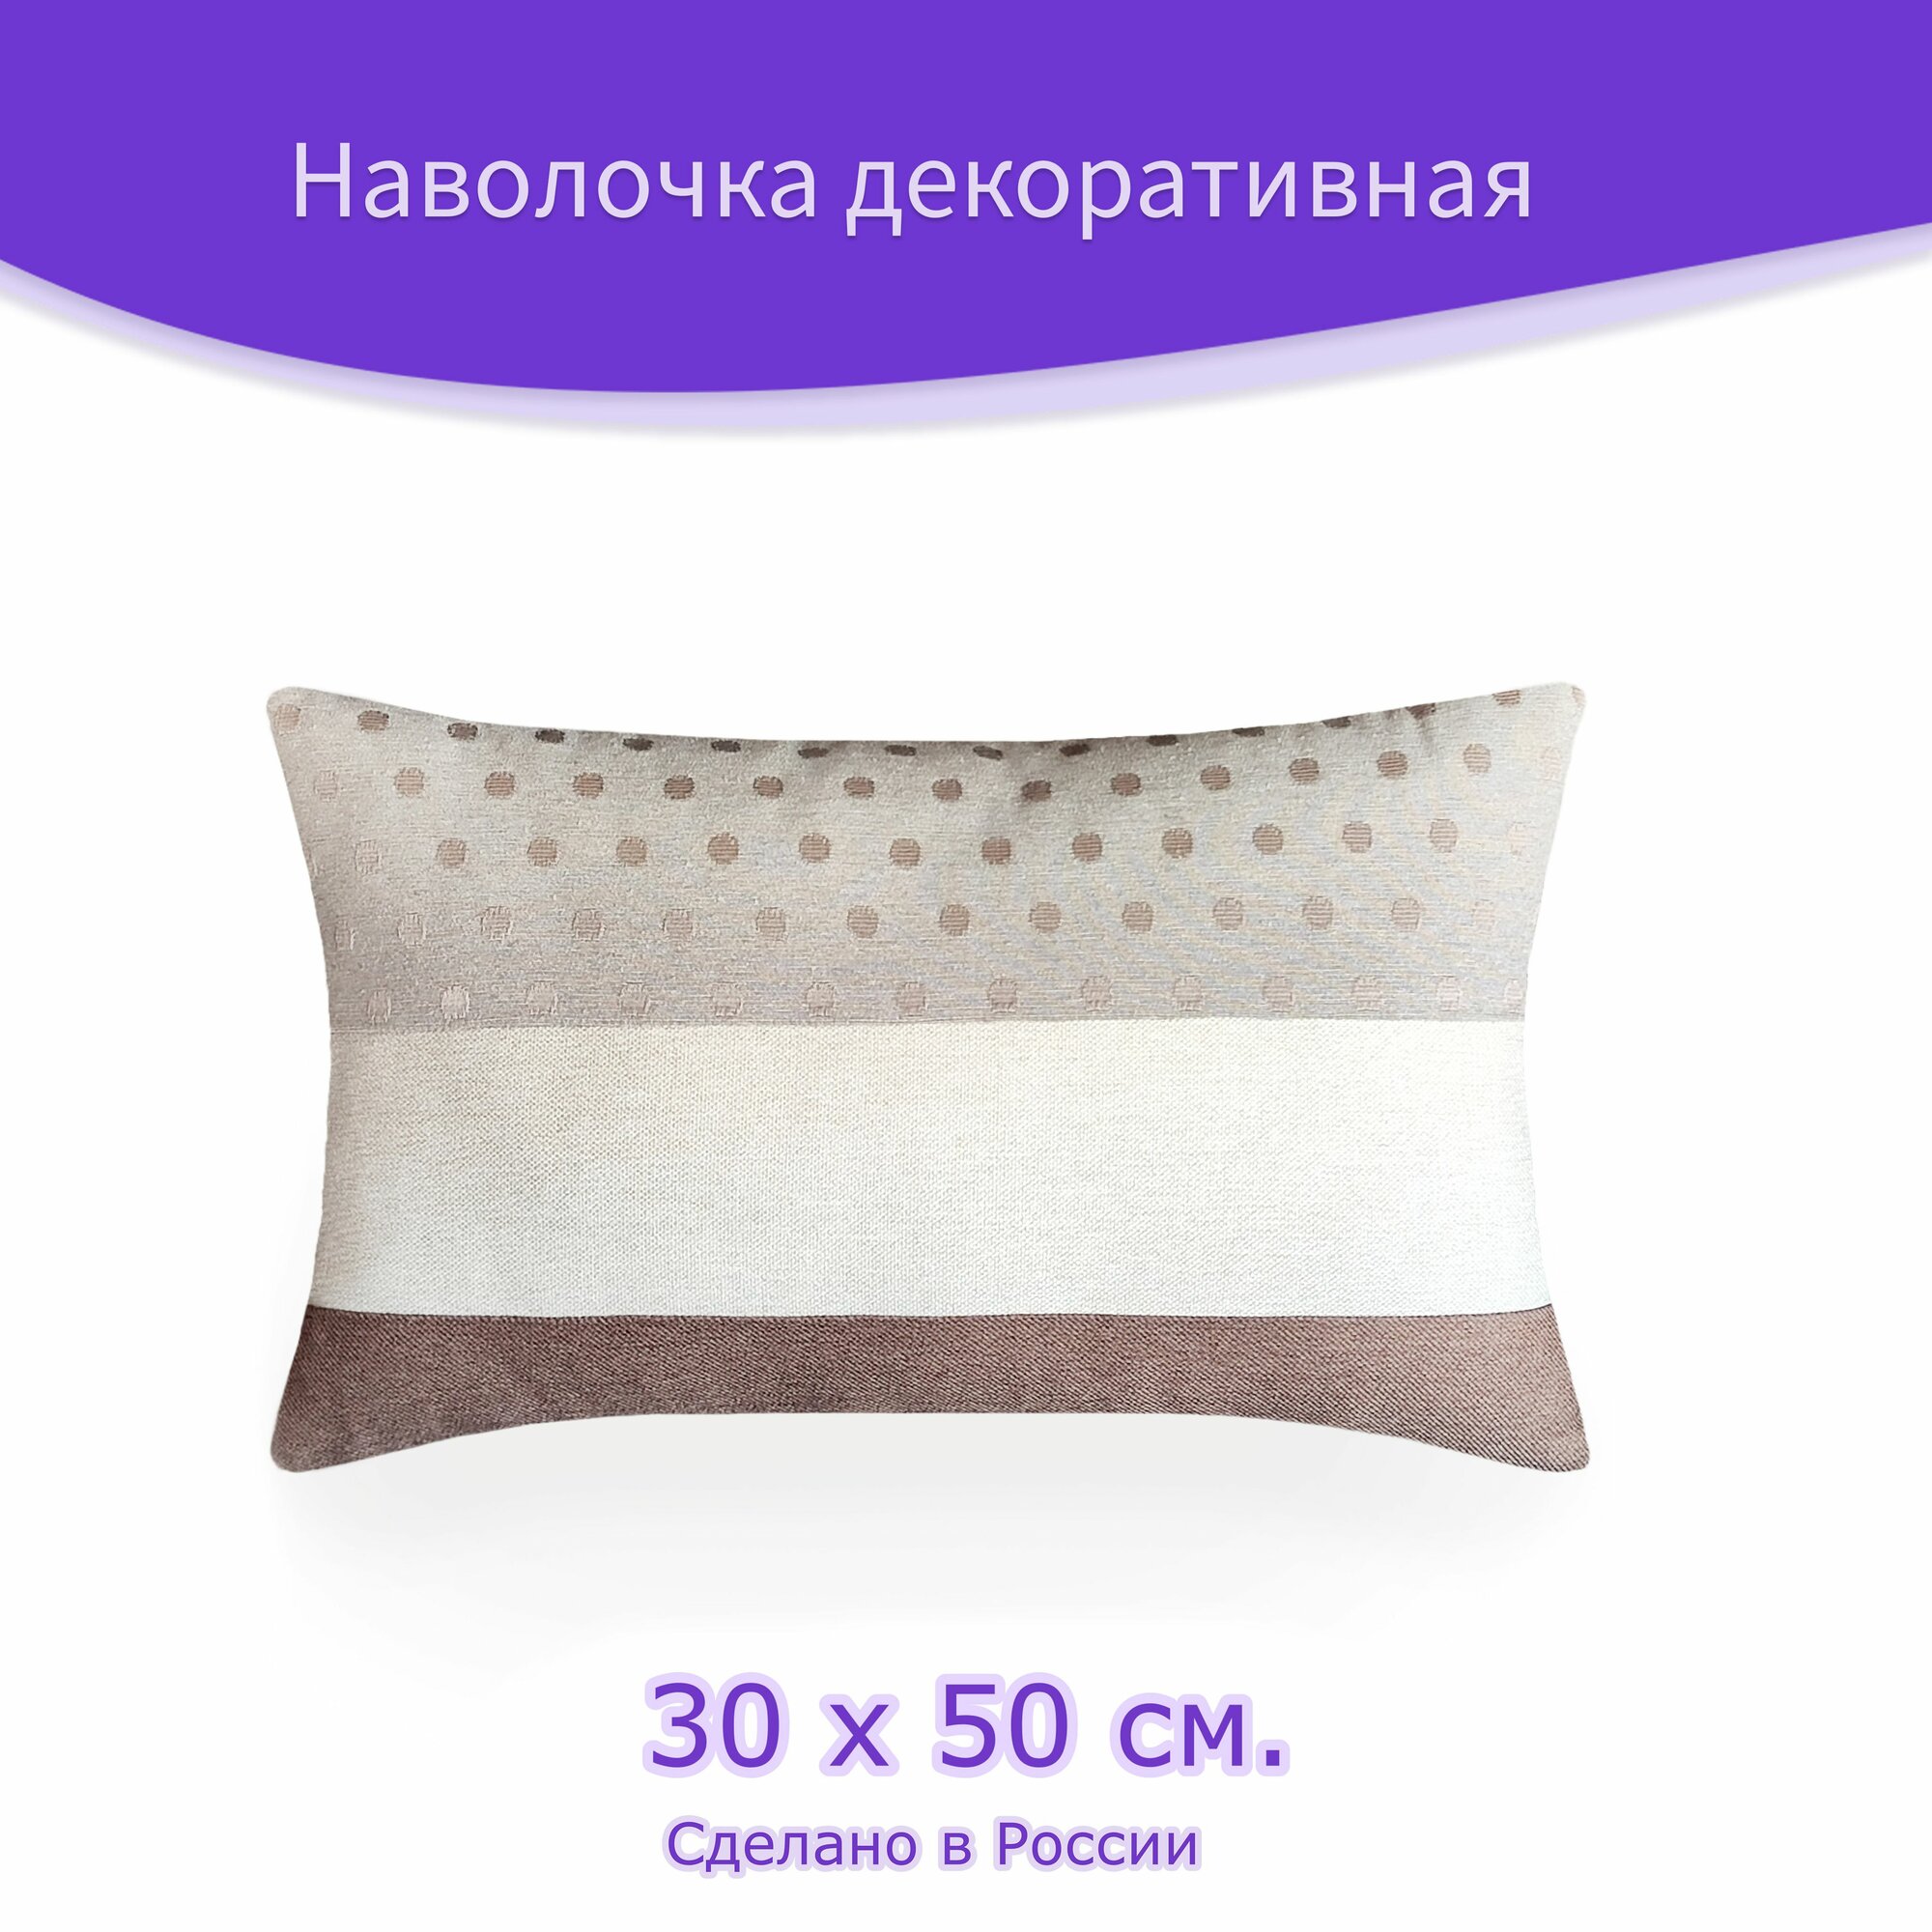 Наволочка - чехол для декоративной подушки "Мерси" Ш 50 х В 30 см, бежевый, коричневый